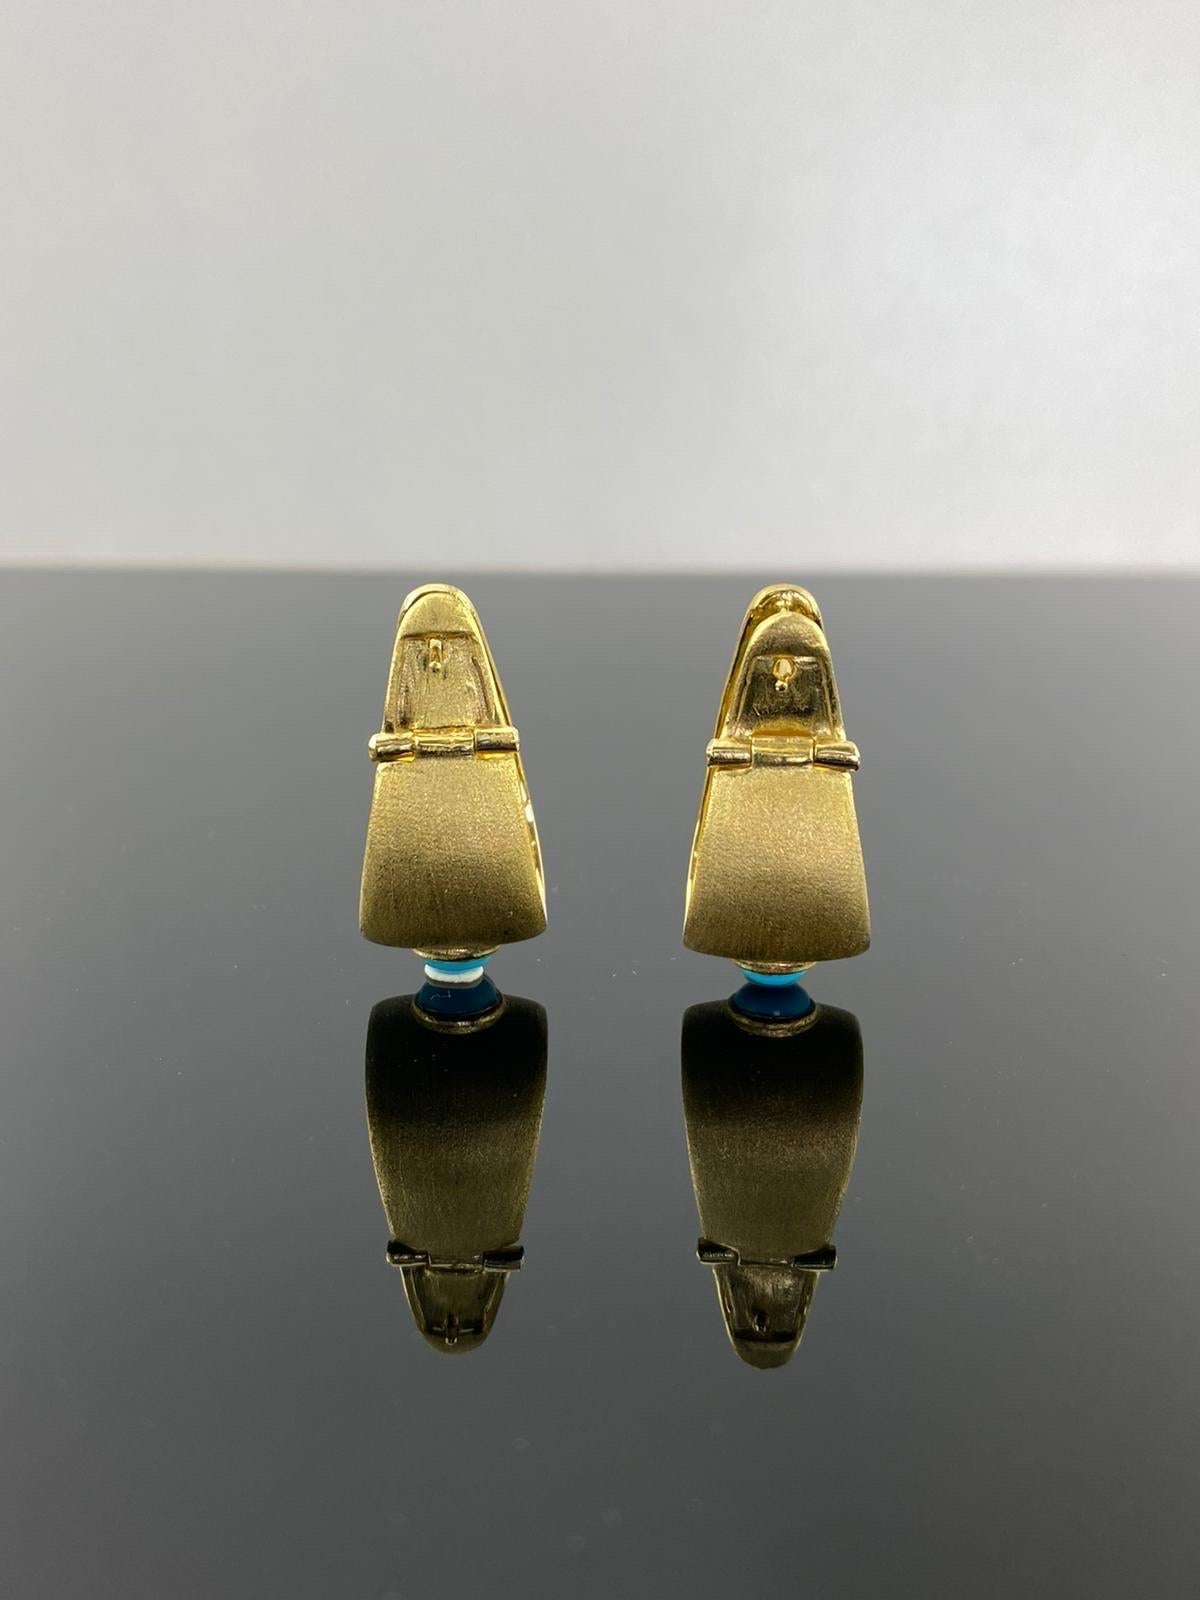 Ein Paar Ohrringe aus 18 Karat Gold, besetzt mit einem runden Cabochon-Türkis. Diese schönen Statement-Ohrringe sind ein tolles Geschenk für sich selbst oder für Ihre Lieben. Die Ohrringe sind aus massivem 18-karätigem Gold gefertigt und mit einer